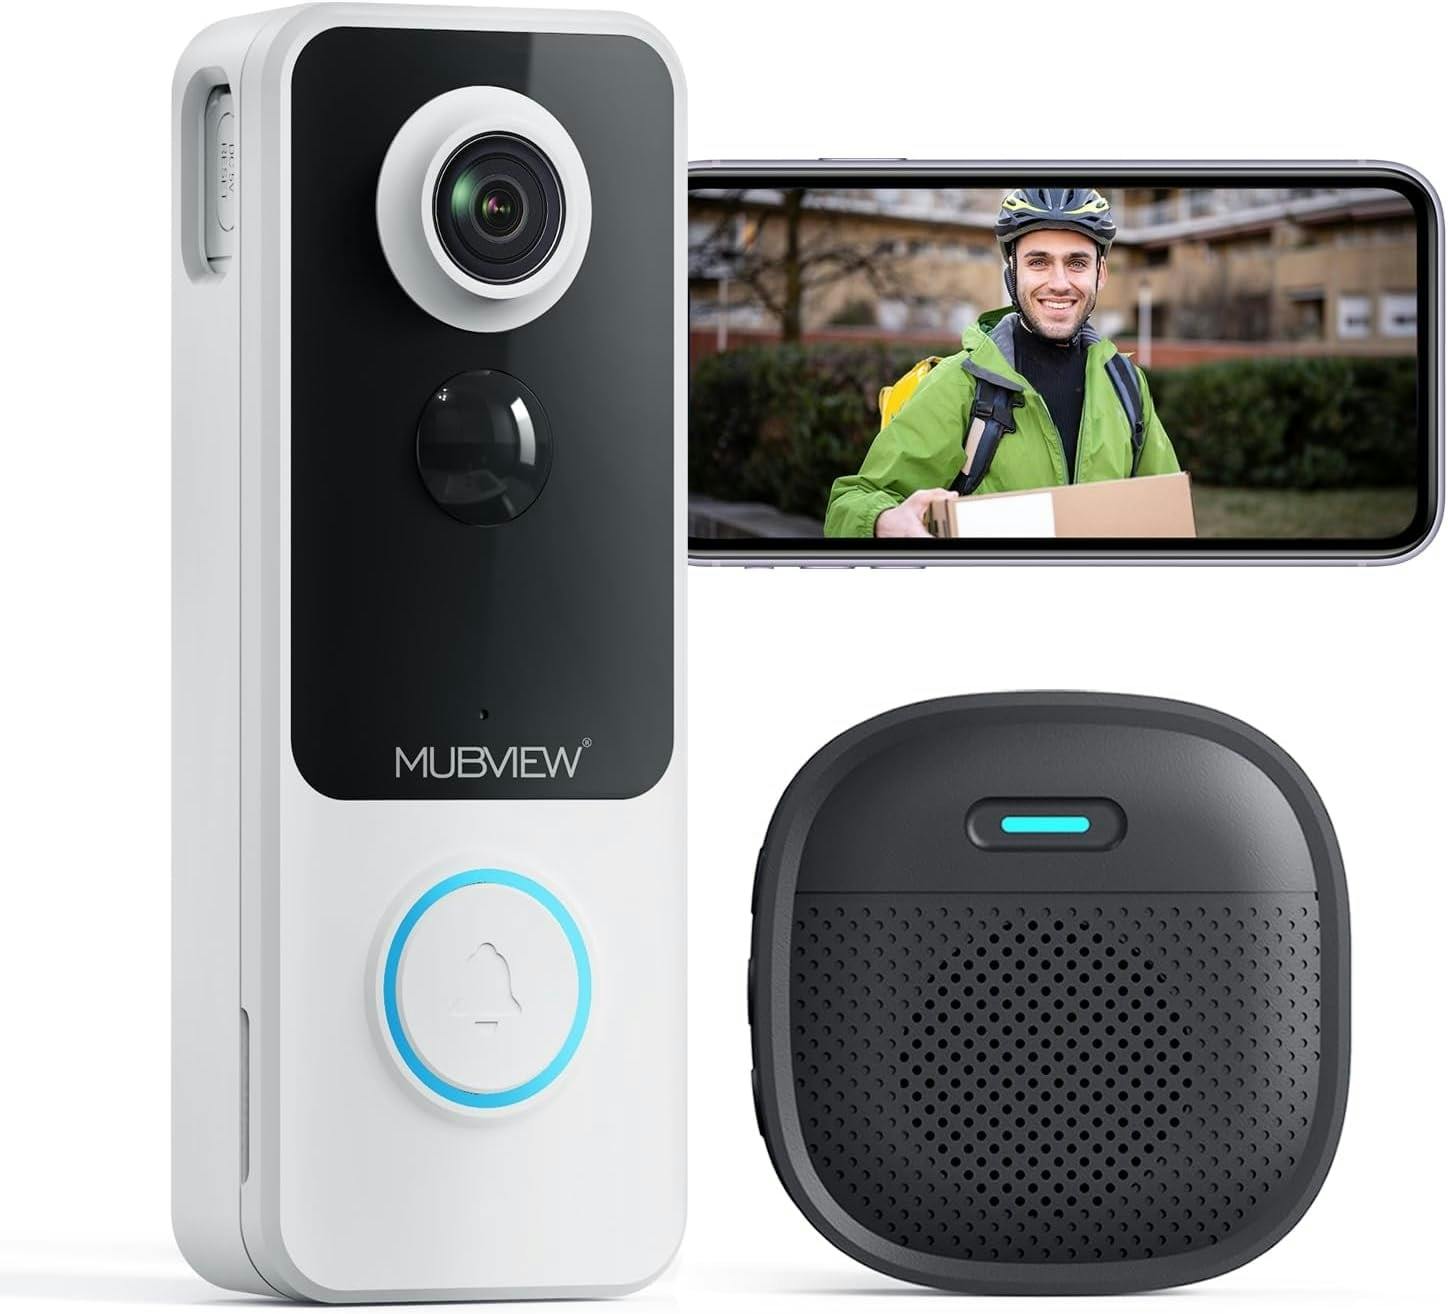 Mubview Wireless Video Doorbell